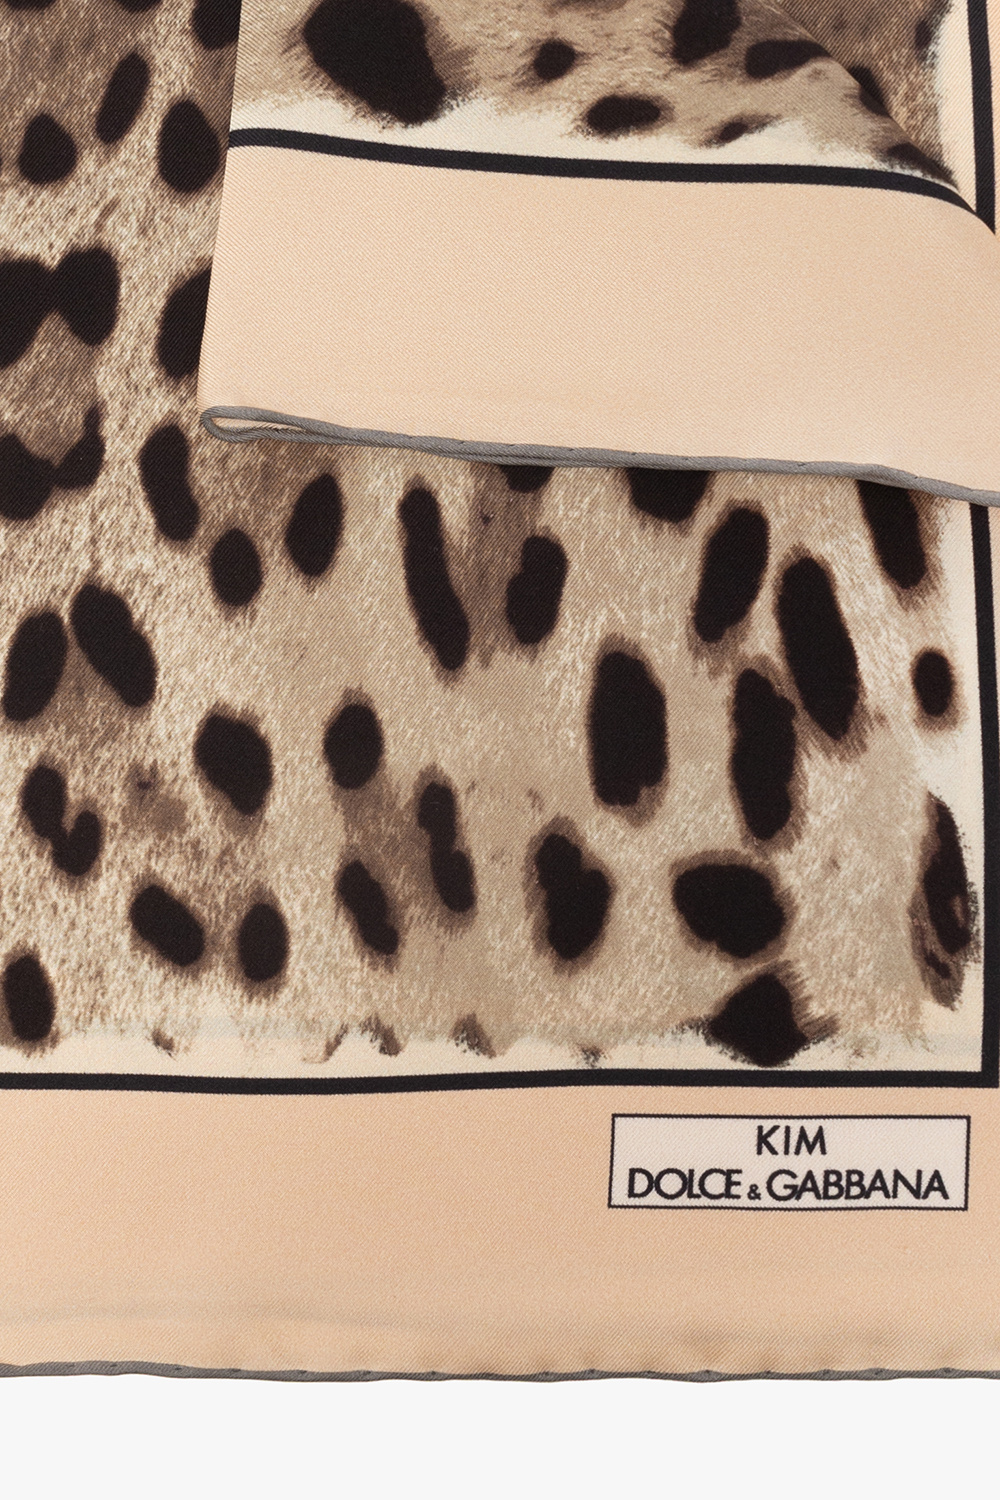 Dolce & Gabbana Dolce & Gabbana x Kim